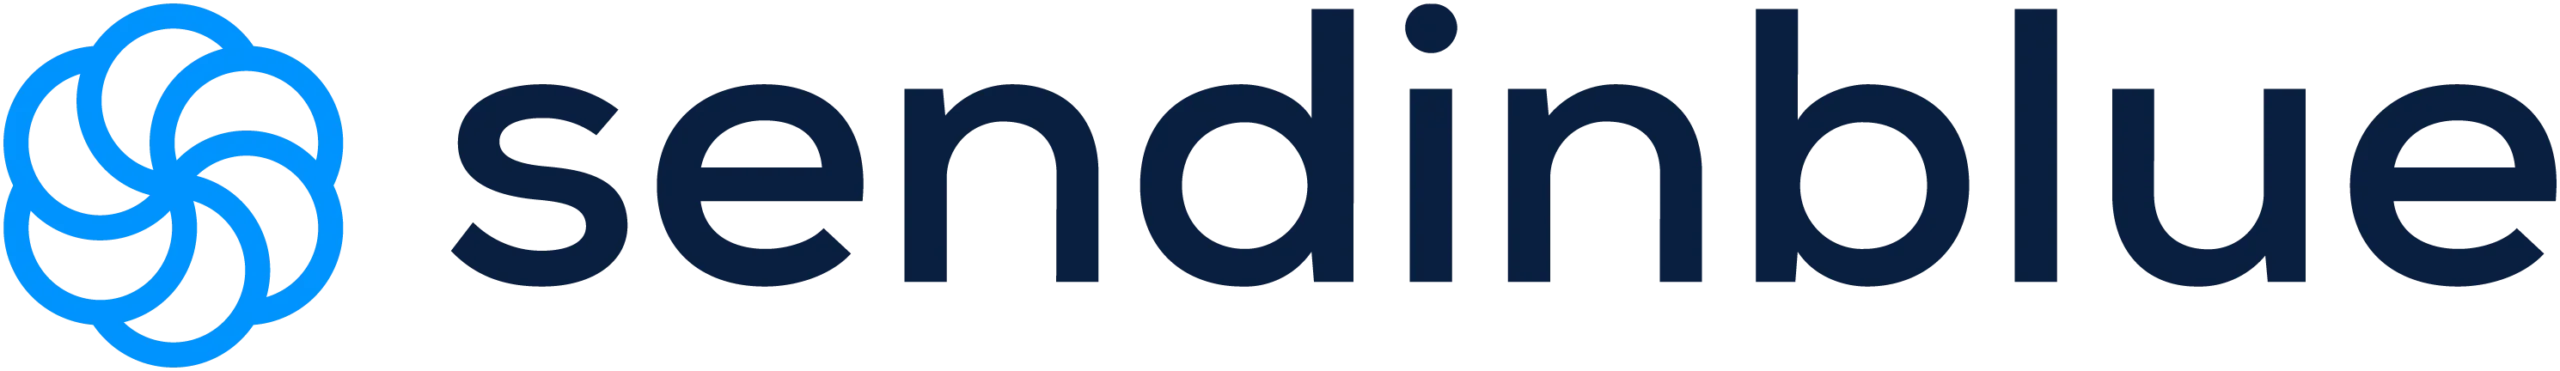 Sendinblue Logo